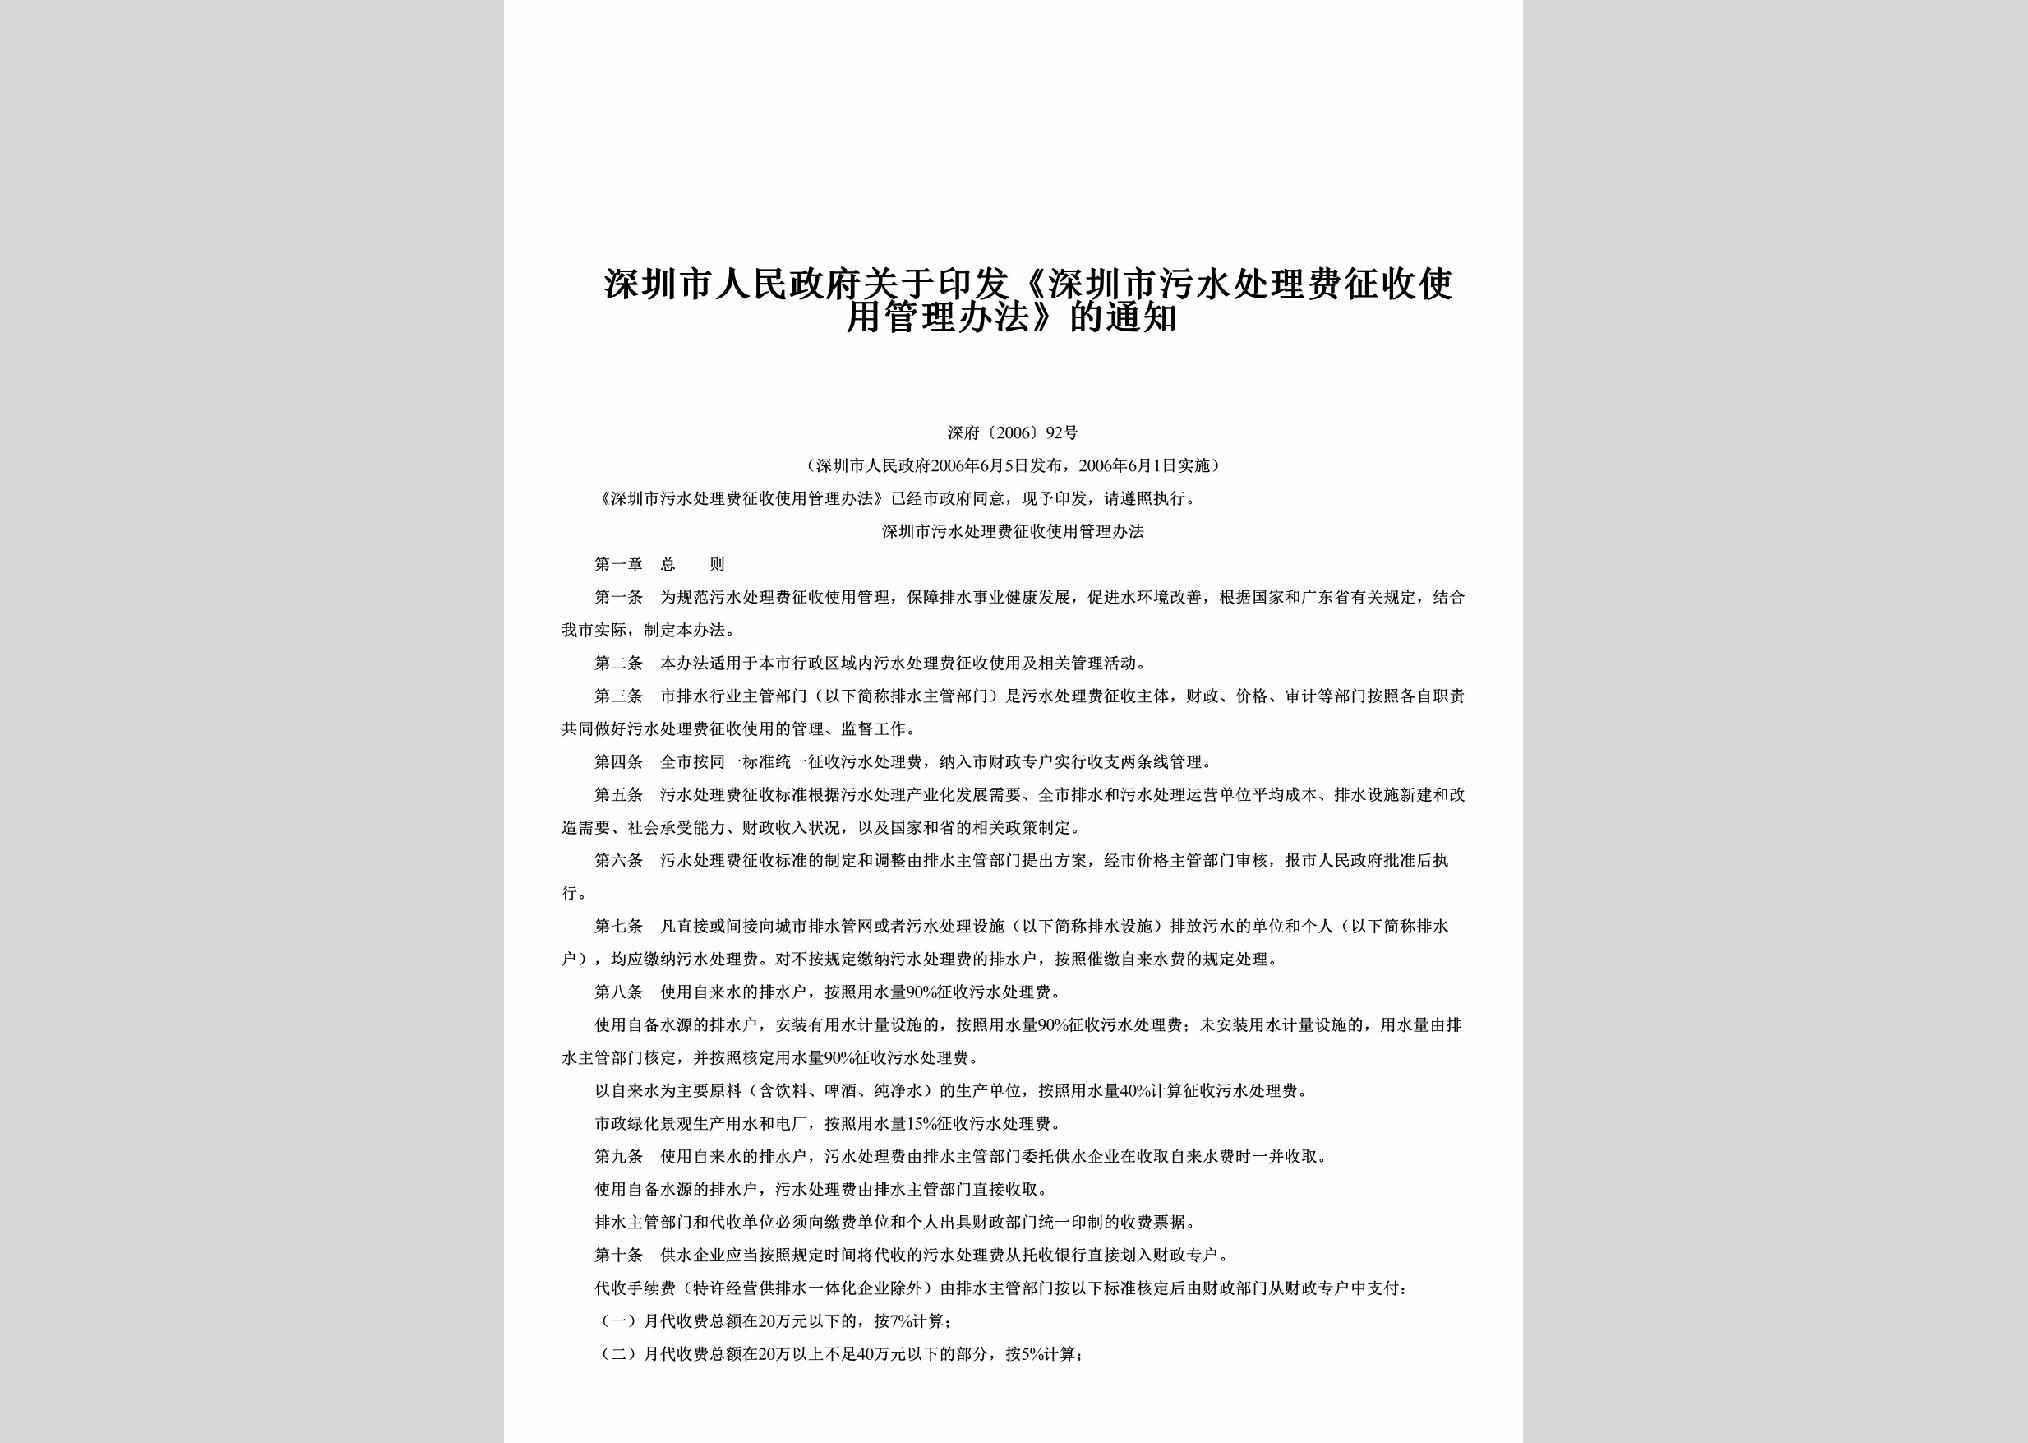 深府[2006]92号：关于印发《深圳市污水处理费征收使用管理办法》的通知